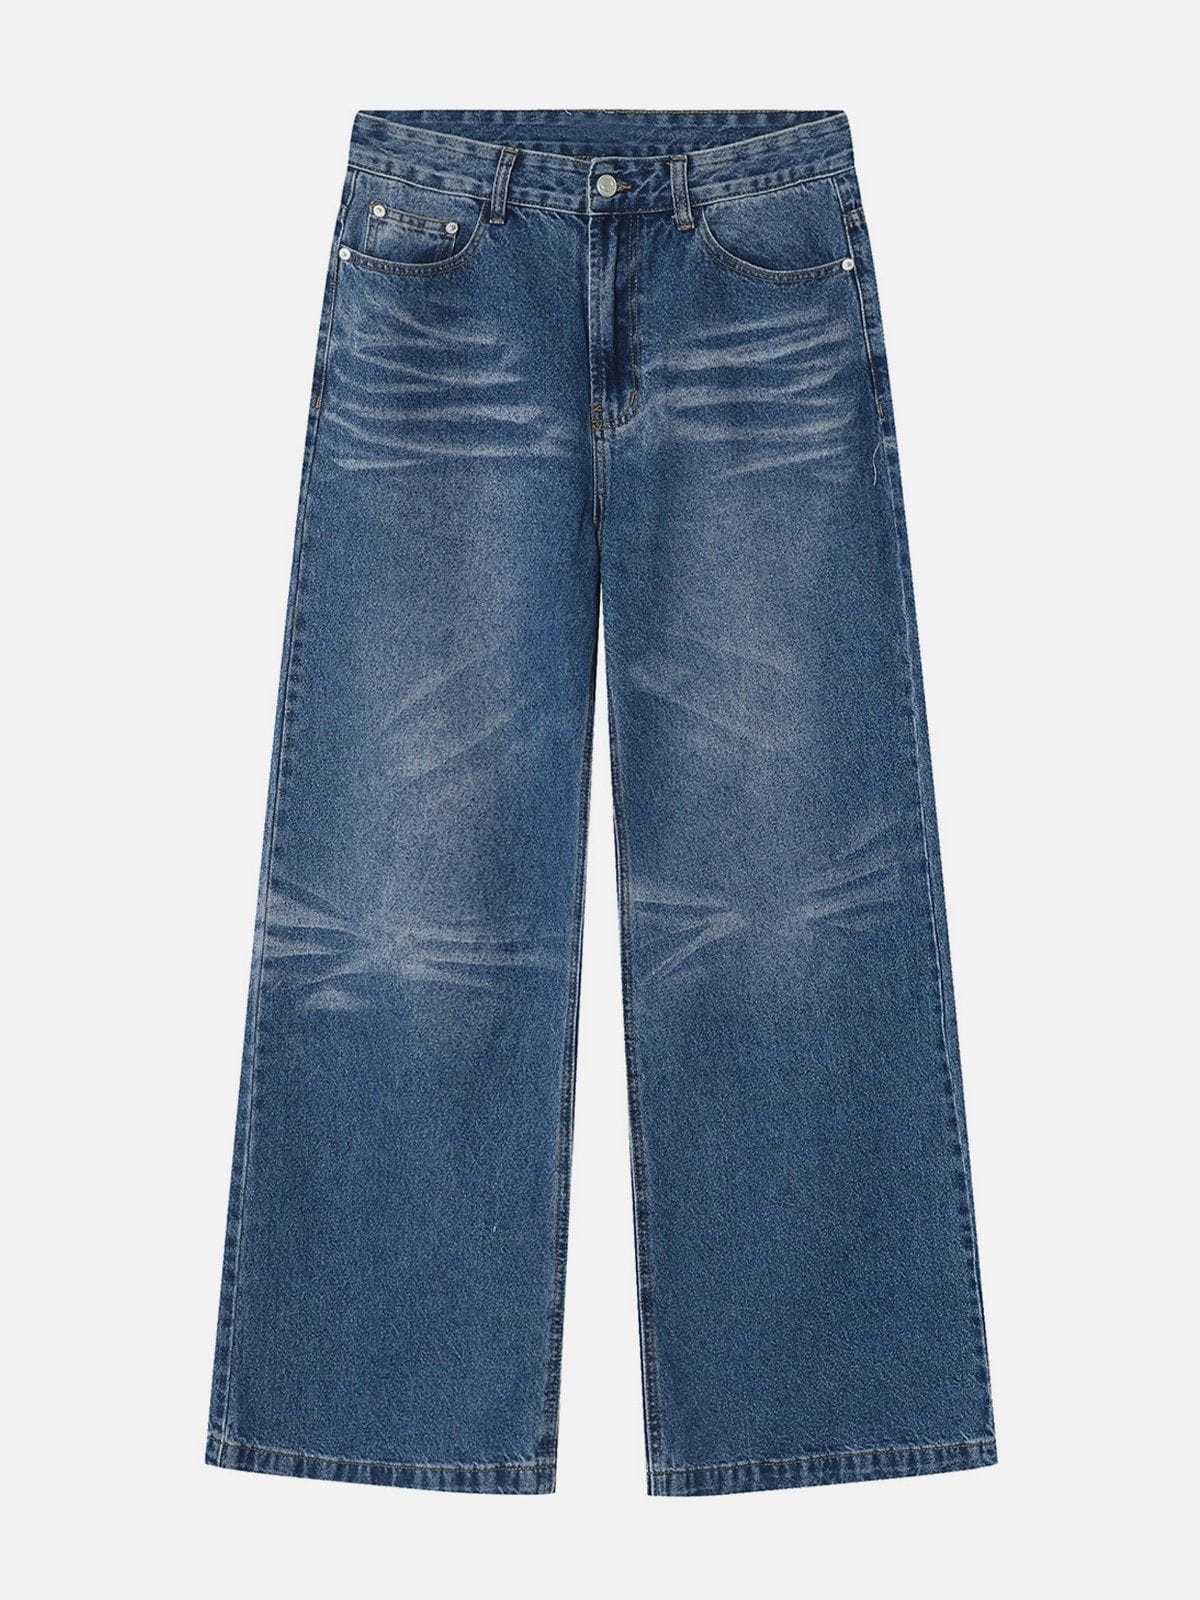 Vintage Folds Loose Jeans